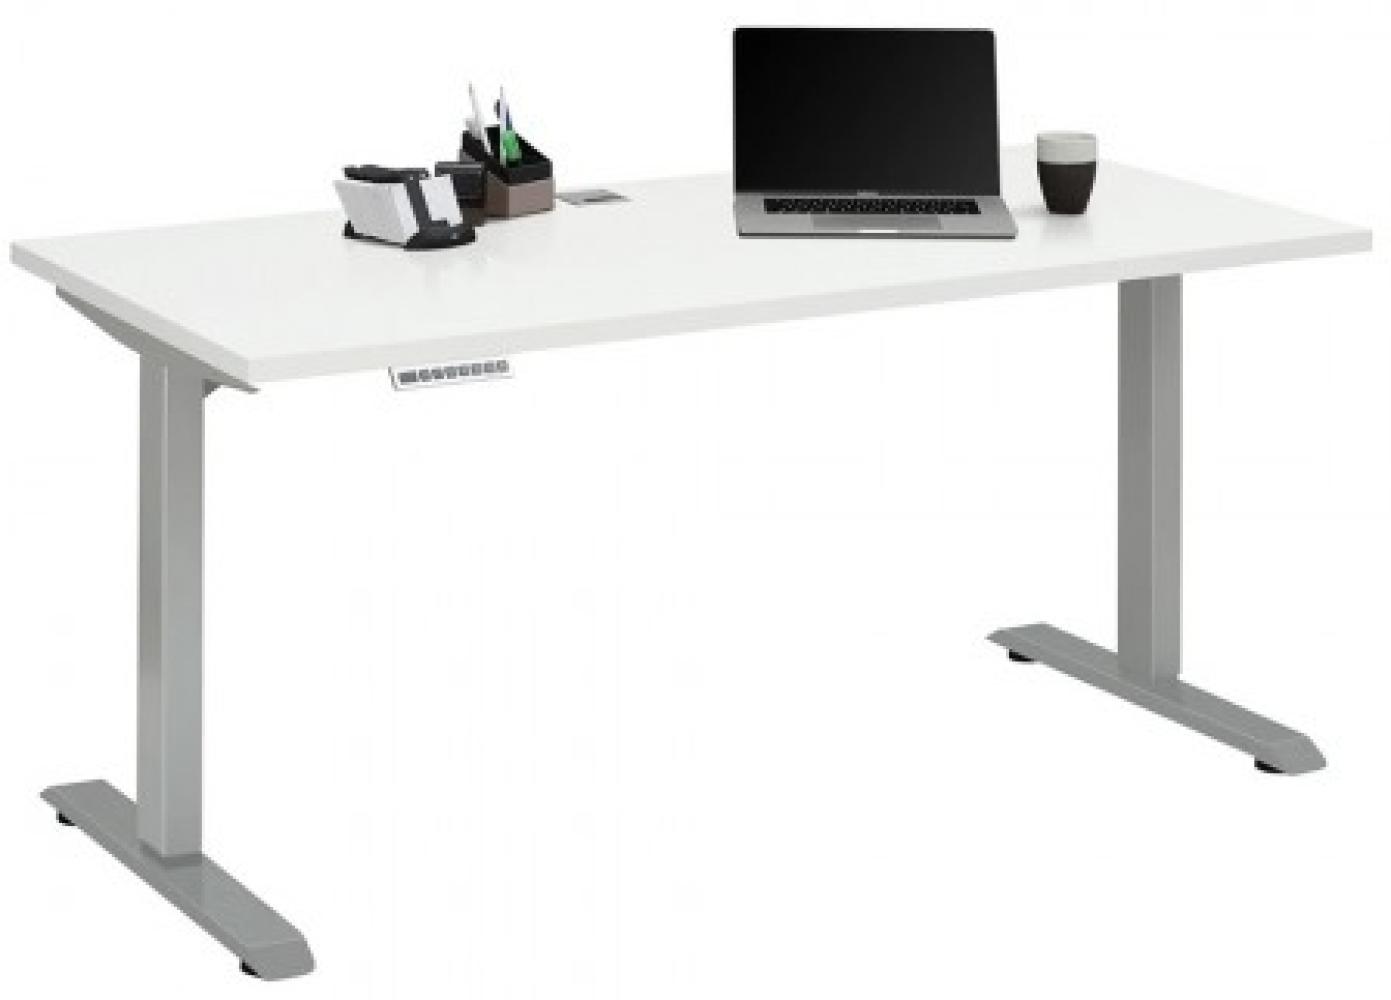 Maja Höhenverstellbarer Schreibtisch 5503 Metall platingrau - weiß matt Bild 1